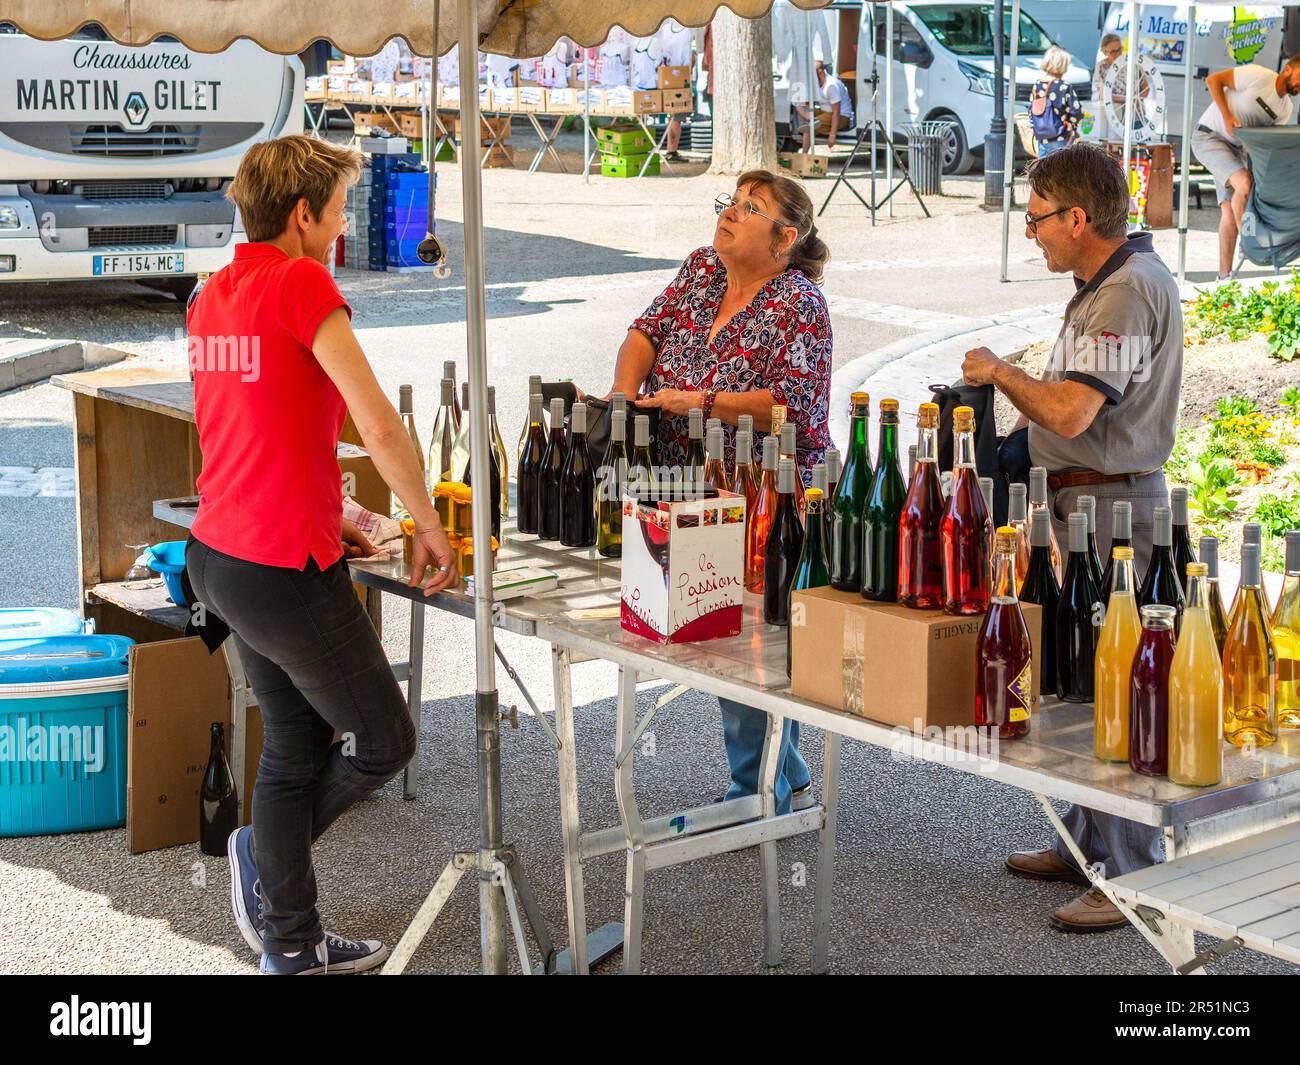 Producteur local de vin vendant aux clients sur le marché - la Roche Posay, Vienne (86), France. Banque D'Images